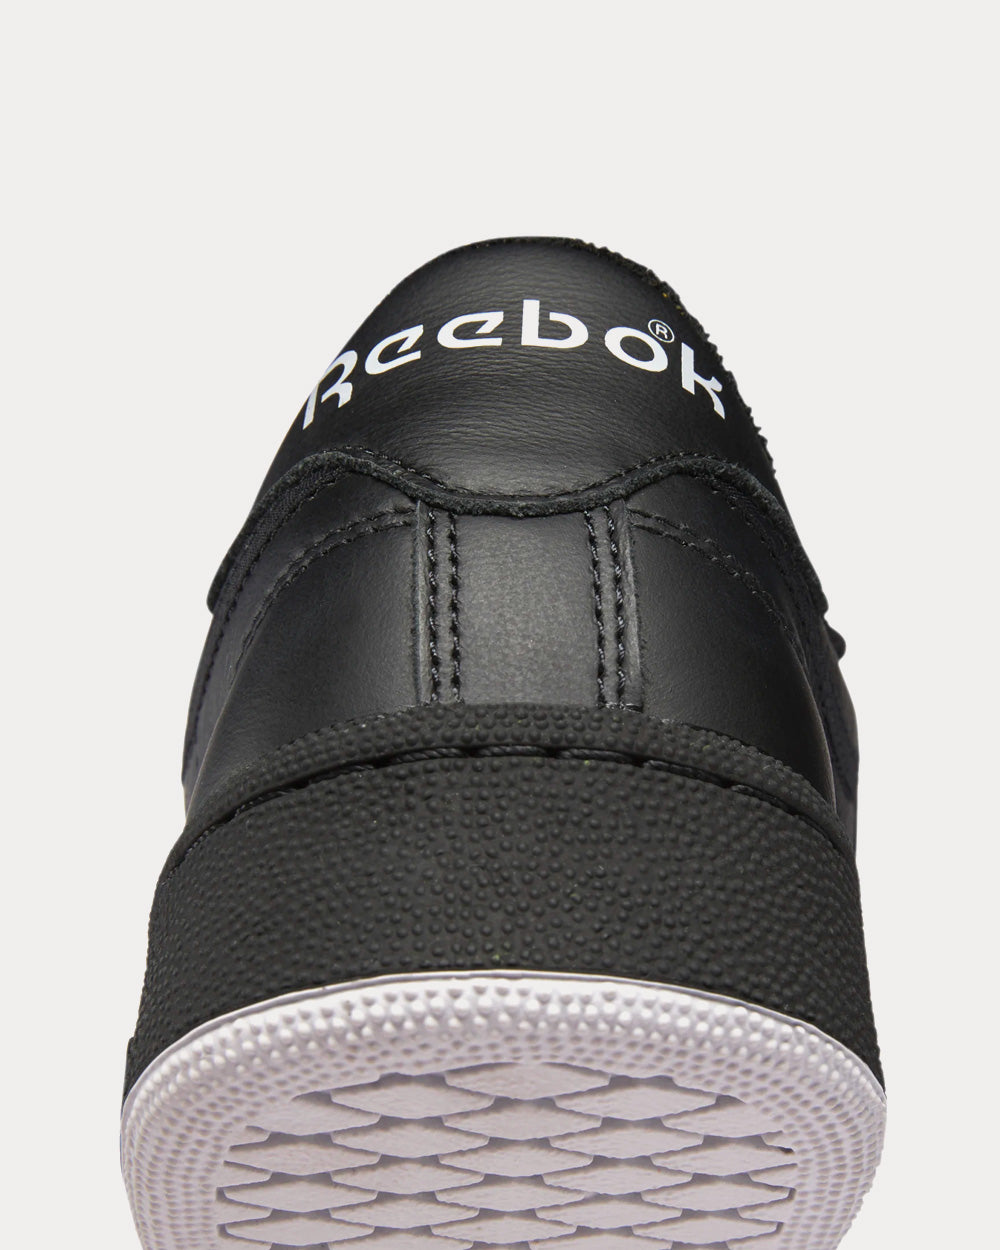 Reebok x Eames - Club C 85 Core Black / Core Black / Cold Grey 2 Low Top Sneakers